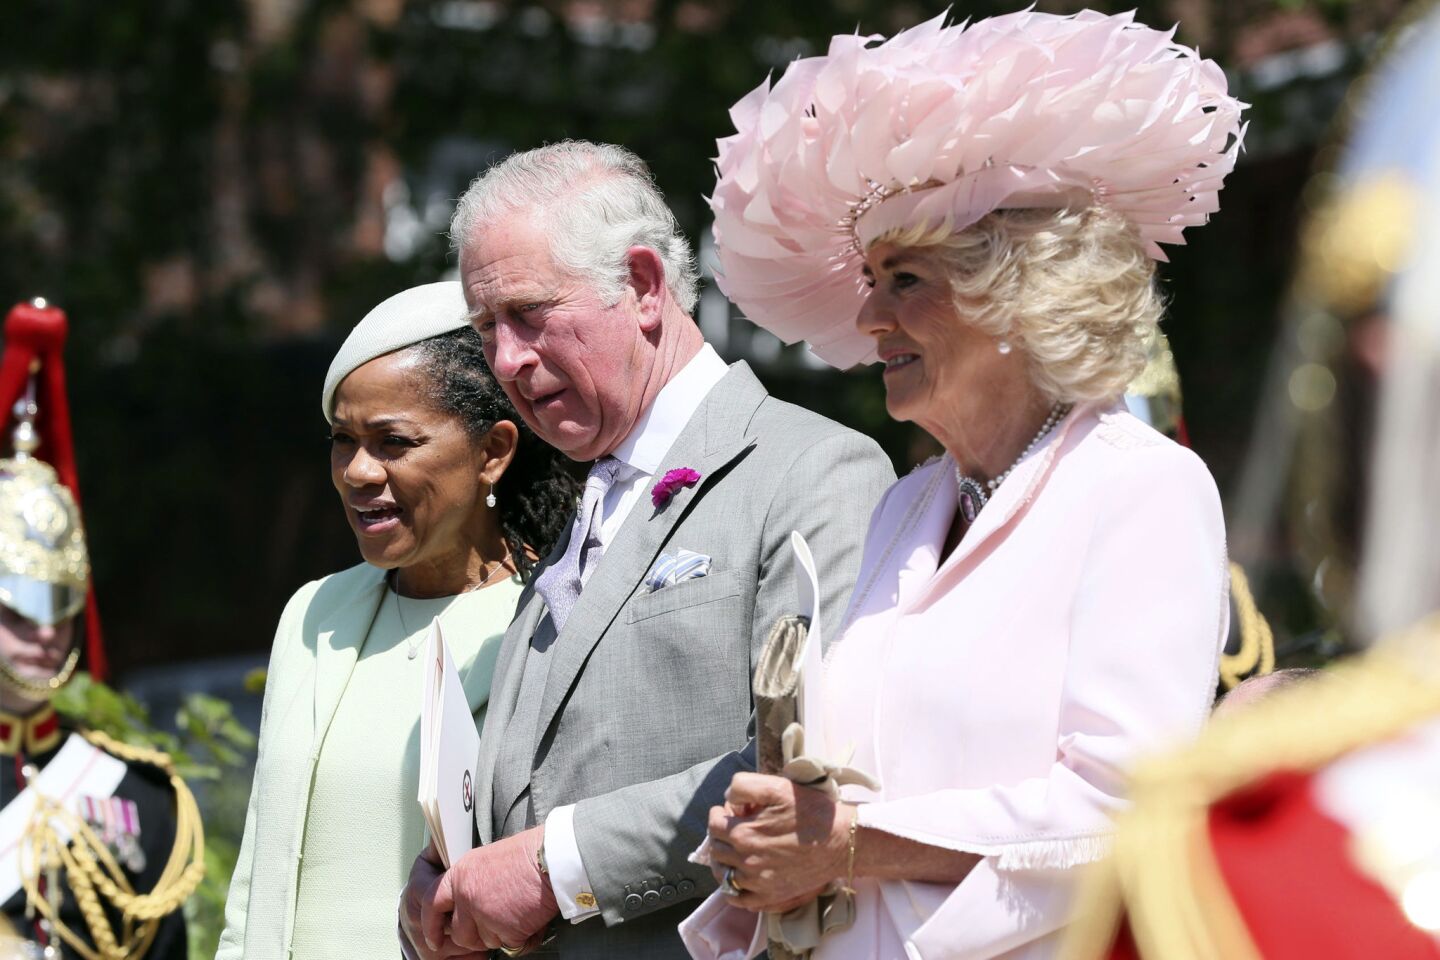 Royal wedding hats and fascinators